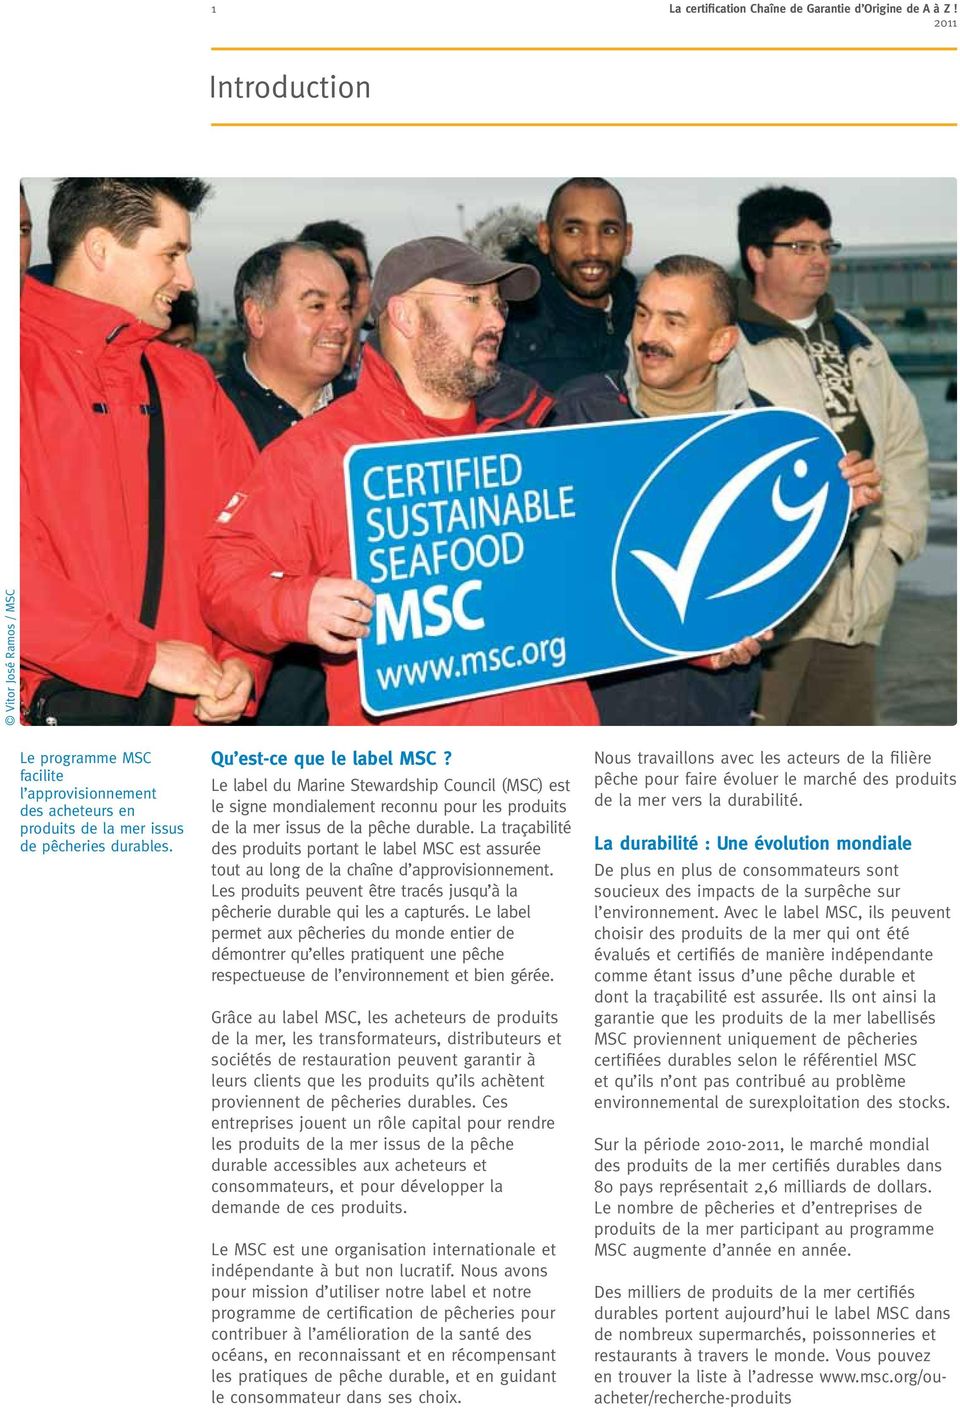 Le label du Marine Stewardship Council (MSC) est le signe mondialement reconnu pour les produits de la mer issus de la pêche durable.